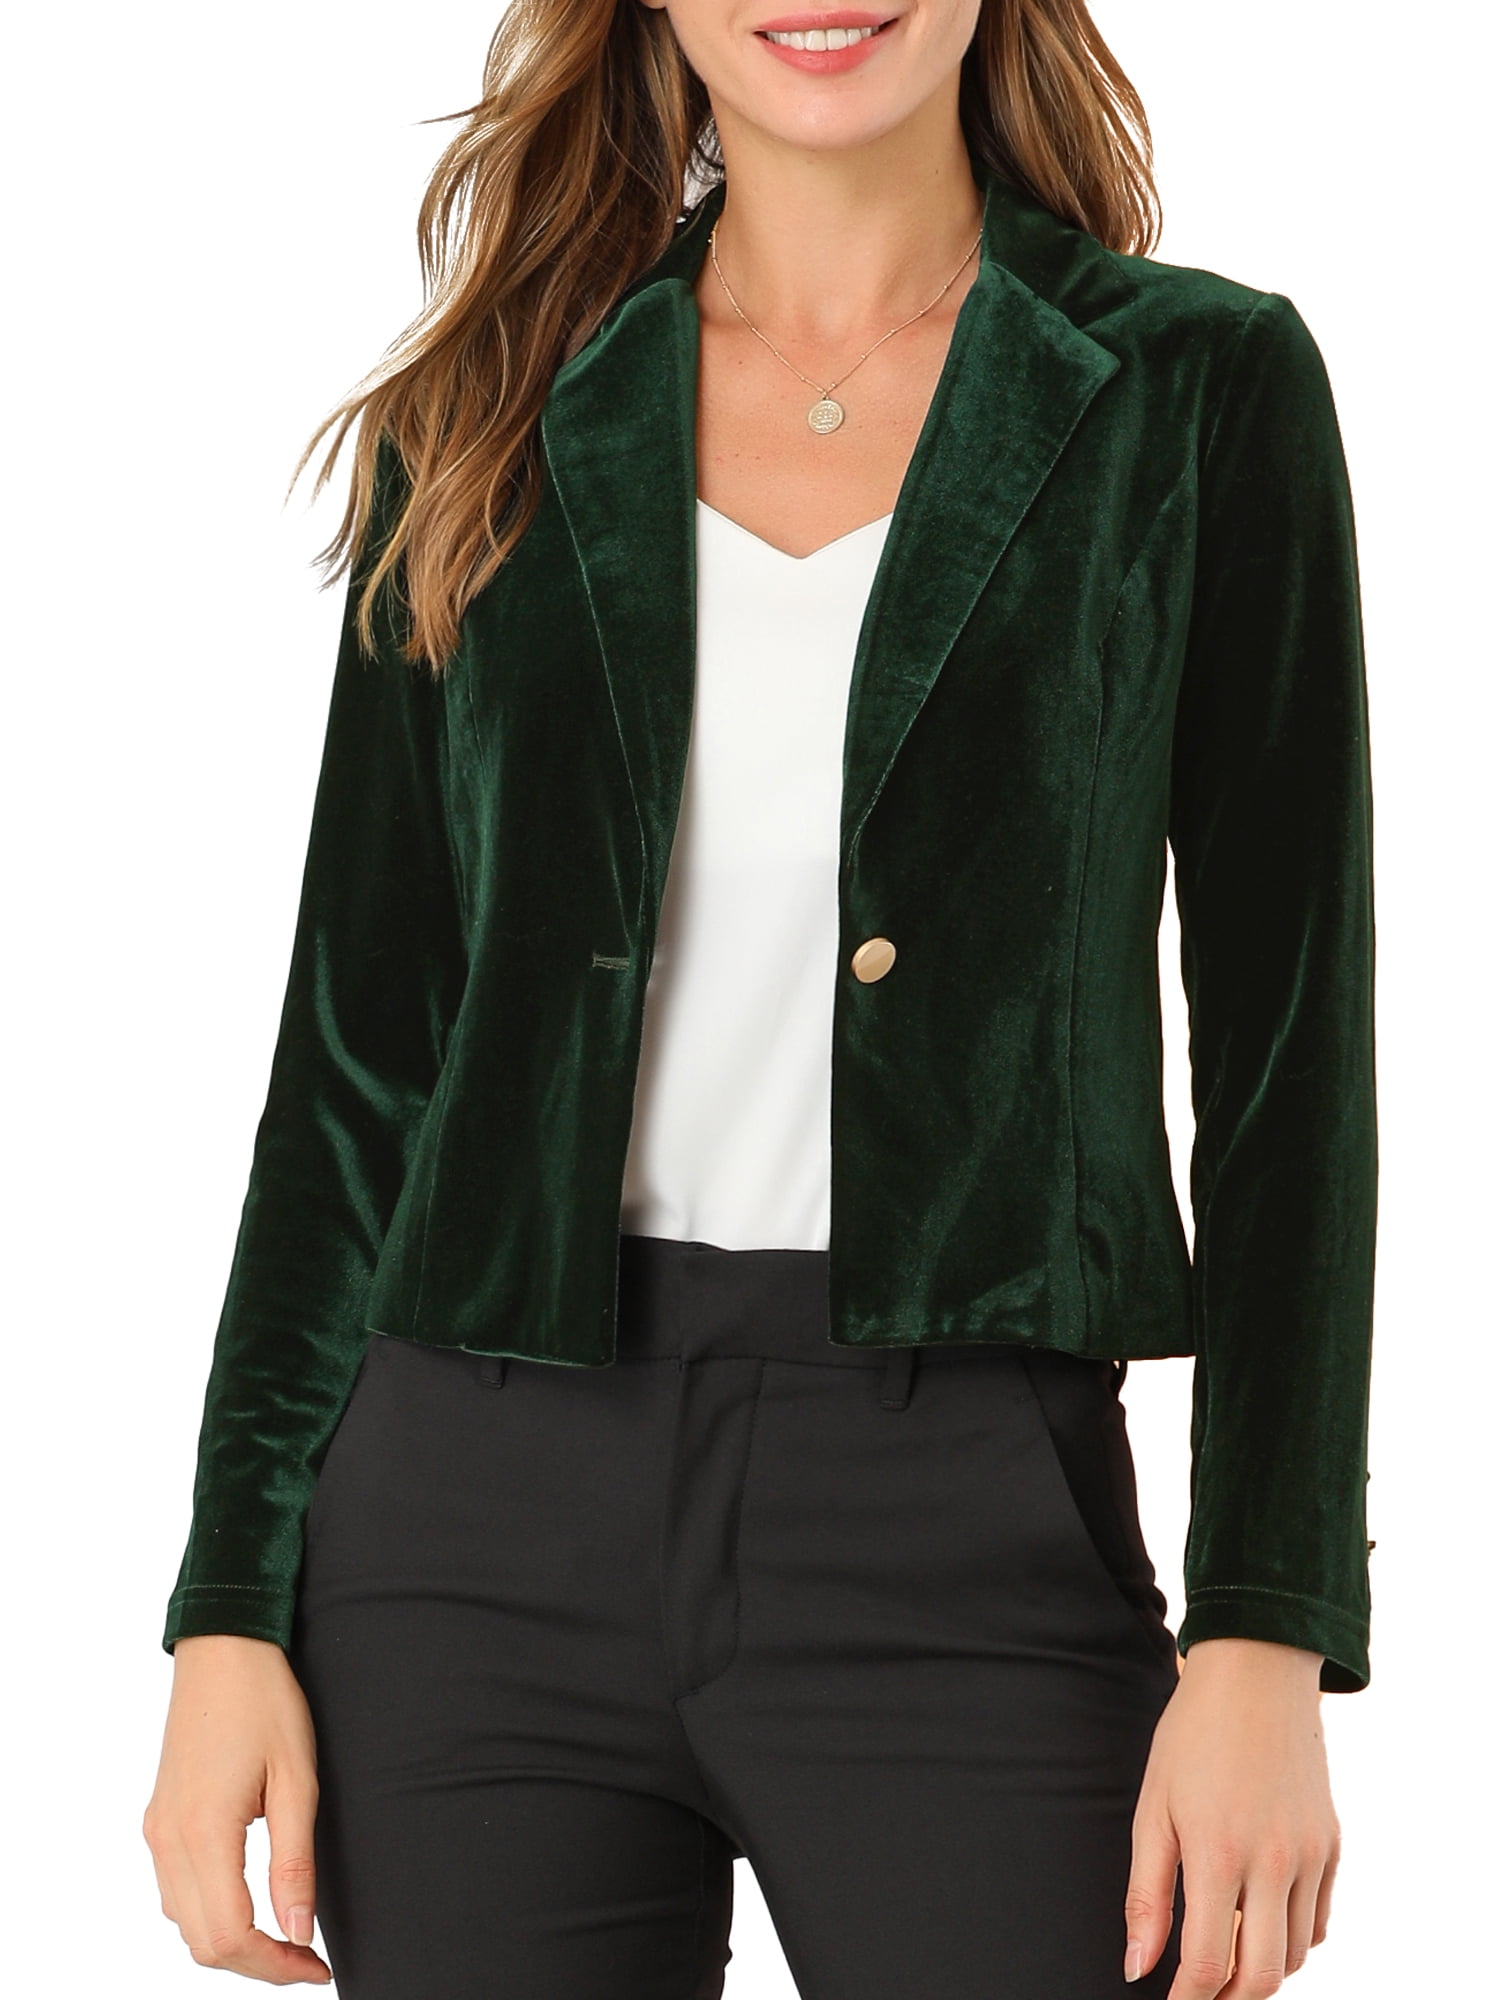 Womens Office Business Velvet Slim Fit Blazer Coat Lapel Collar Dress Jacket